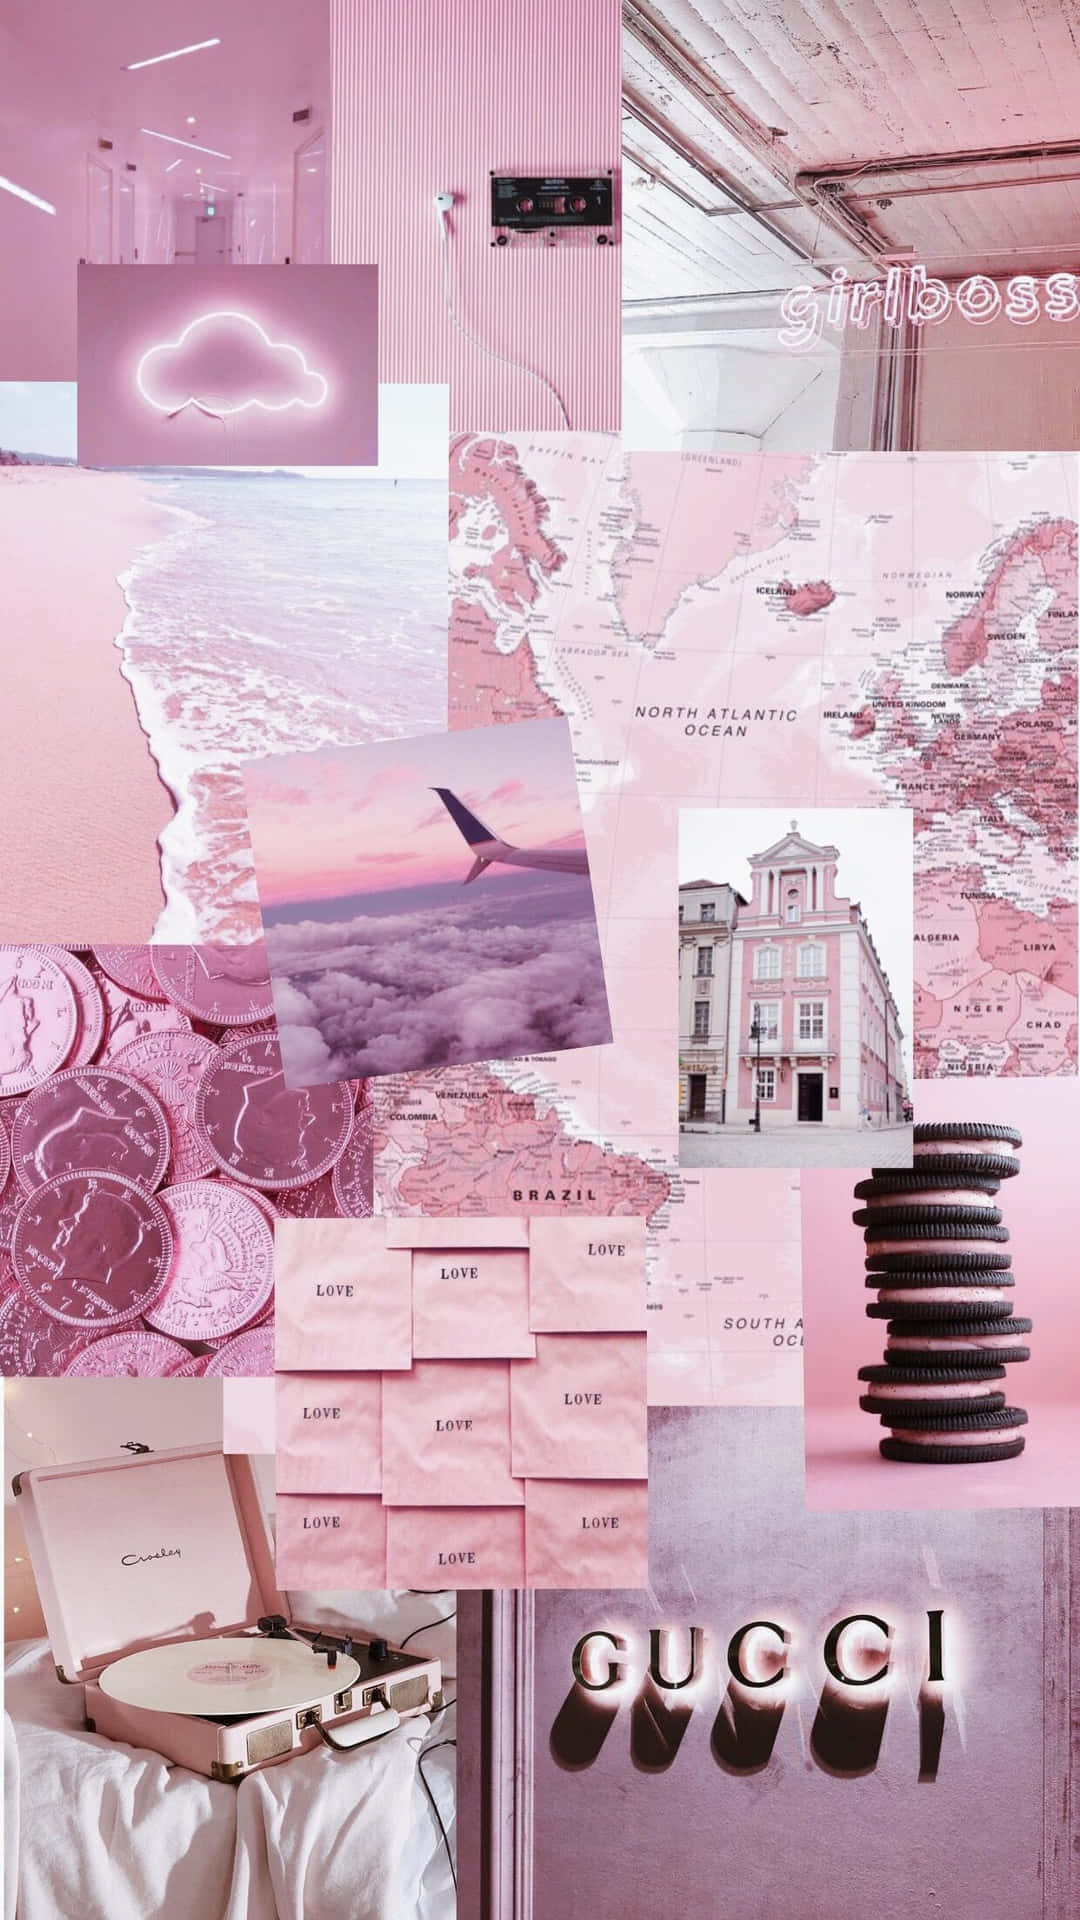 Trang Tumblr thẩm mỹ học đang chờ bạn khám phá, và hãy bắt đầu bằng cách ngắm nhìn nền hình nền hồng thẩm mỹ này. Thiết kế tuyệt đẹp và hiện đại sẽ khiến bạn say mê và đắm chìm trong không gian thẩm mỹ.